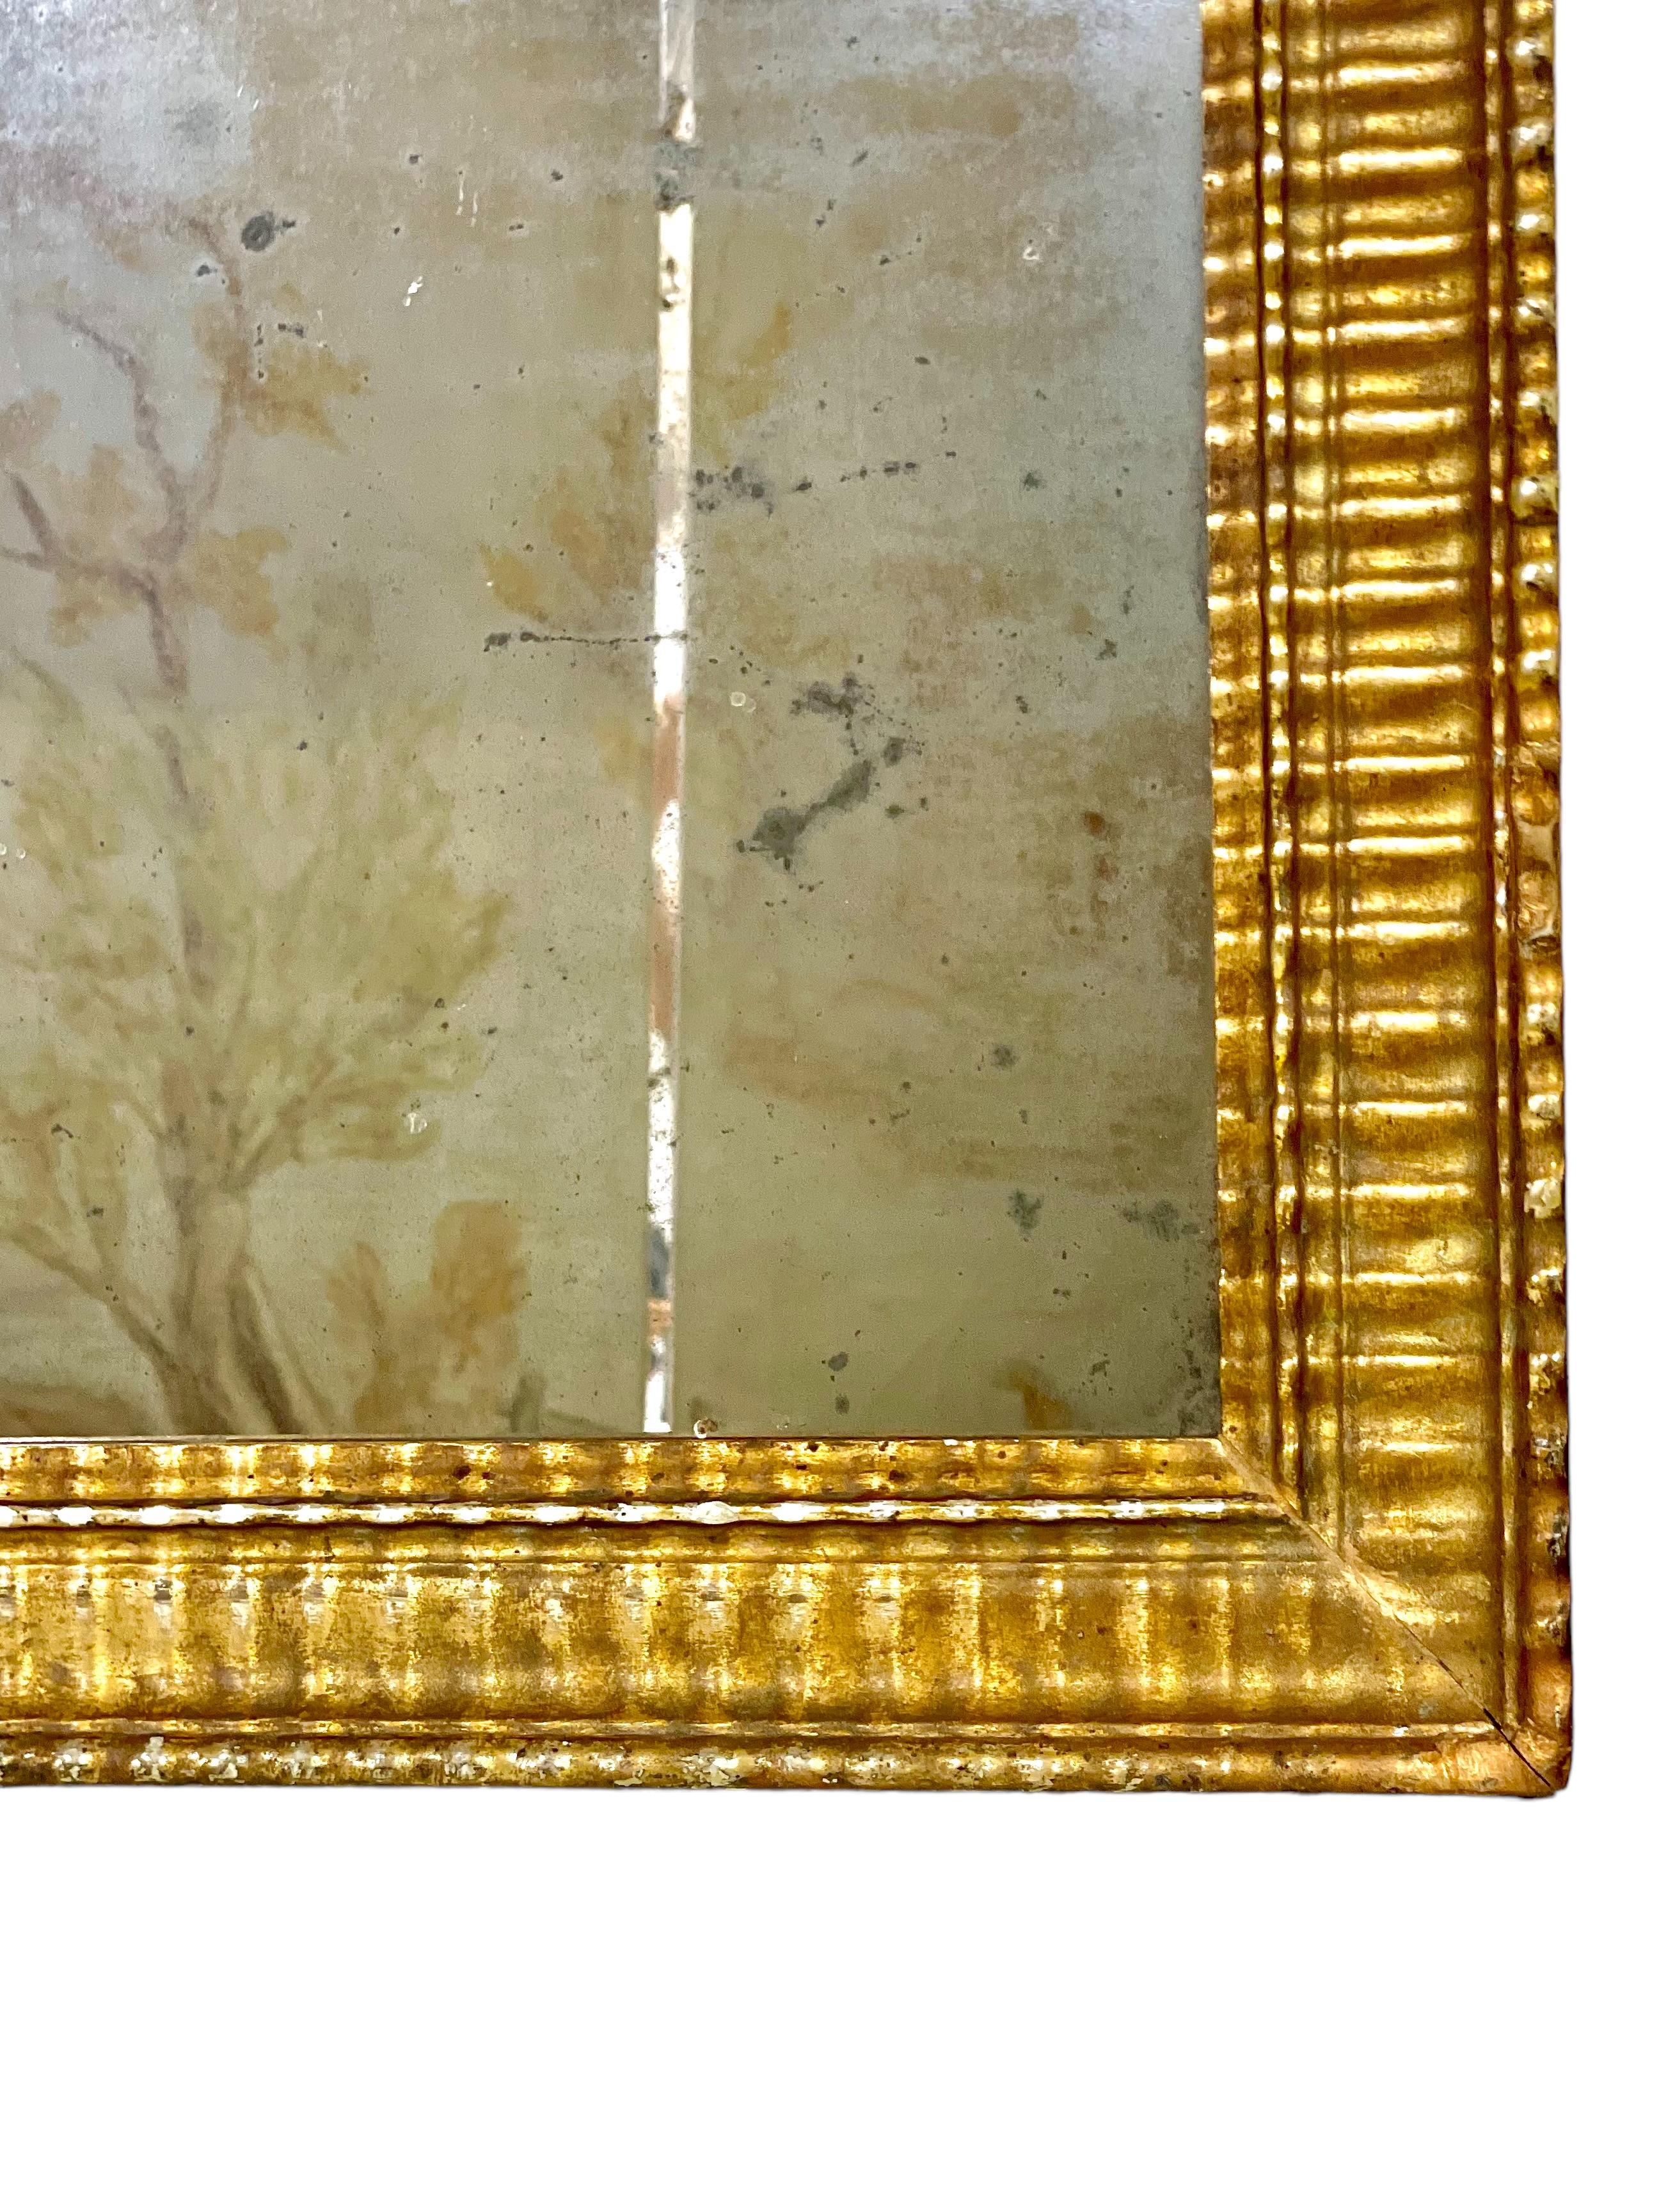 Ein sehr schöner rechteckiger Louis-Philippe-Spiegel in einem wunderschönen vergoldeten Holzrahmen, der rundherum in einem einfachen, aber attraktiven gerippten oder geriffelten Stil geschnitzt ist. Dieser fabelhafte Wandspiegel aus der Mitte des